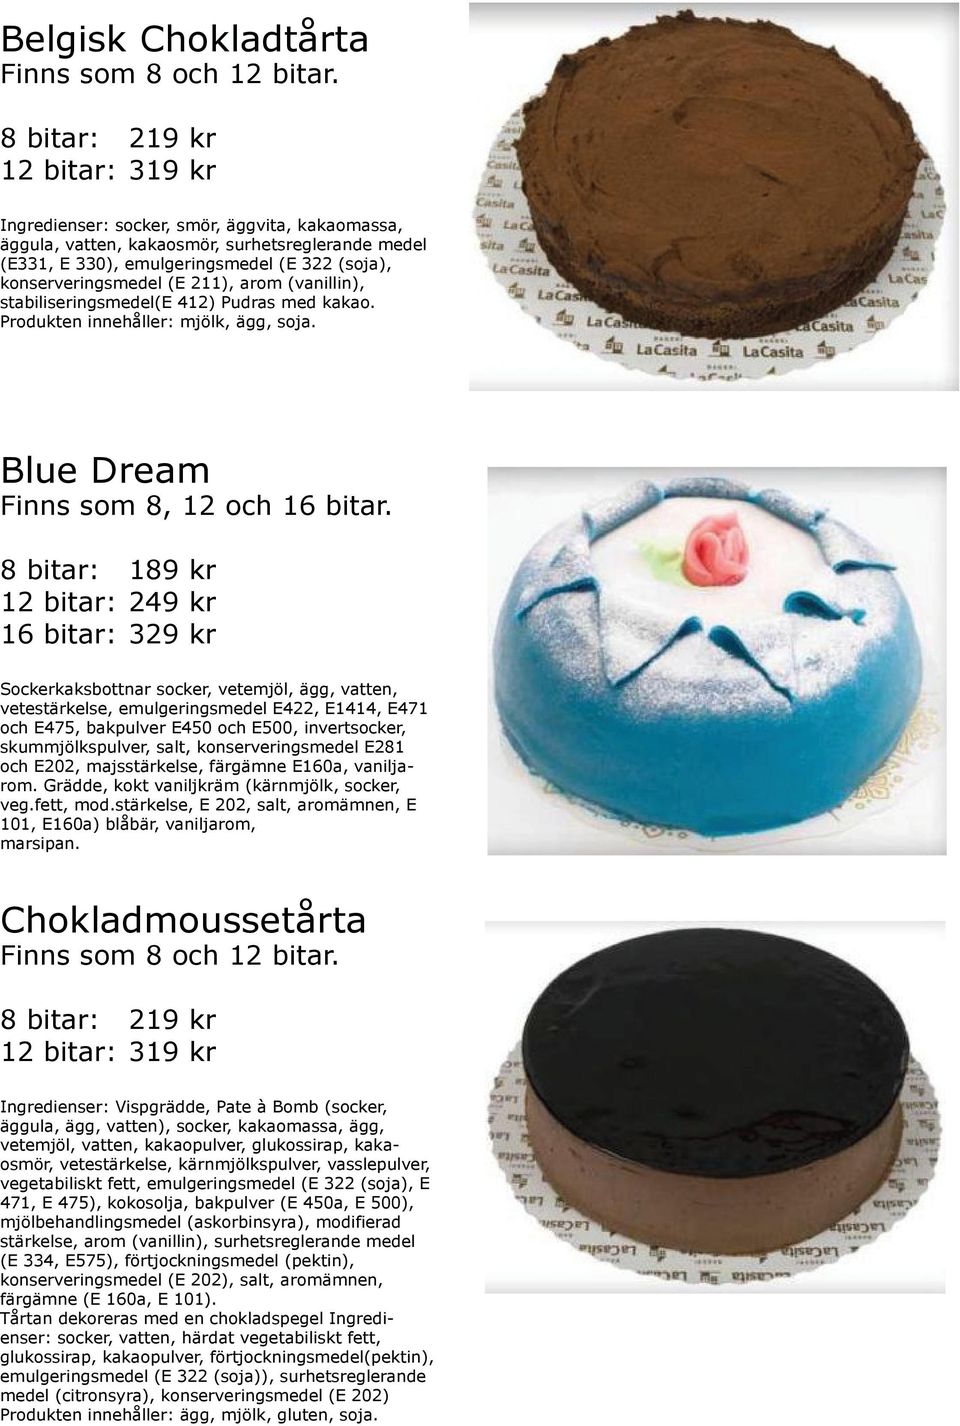 Blue Dream 8 bitar: 189 kr 12 bitar: 249 kr 16 bitar: 329 kr Grädde, kokt vaniljkräm (kärnmjölk, socker, 101, E160a) blåbär, vaniljarom, marsipan.